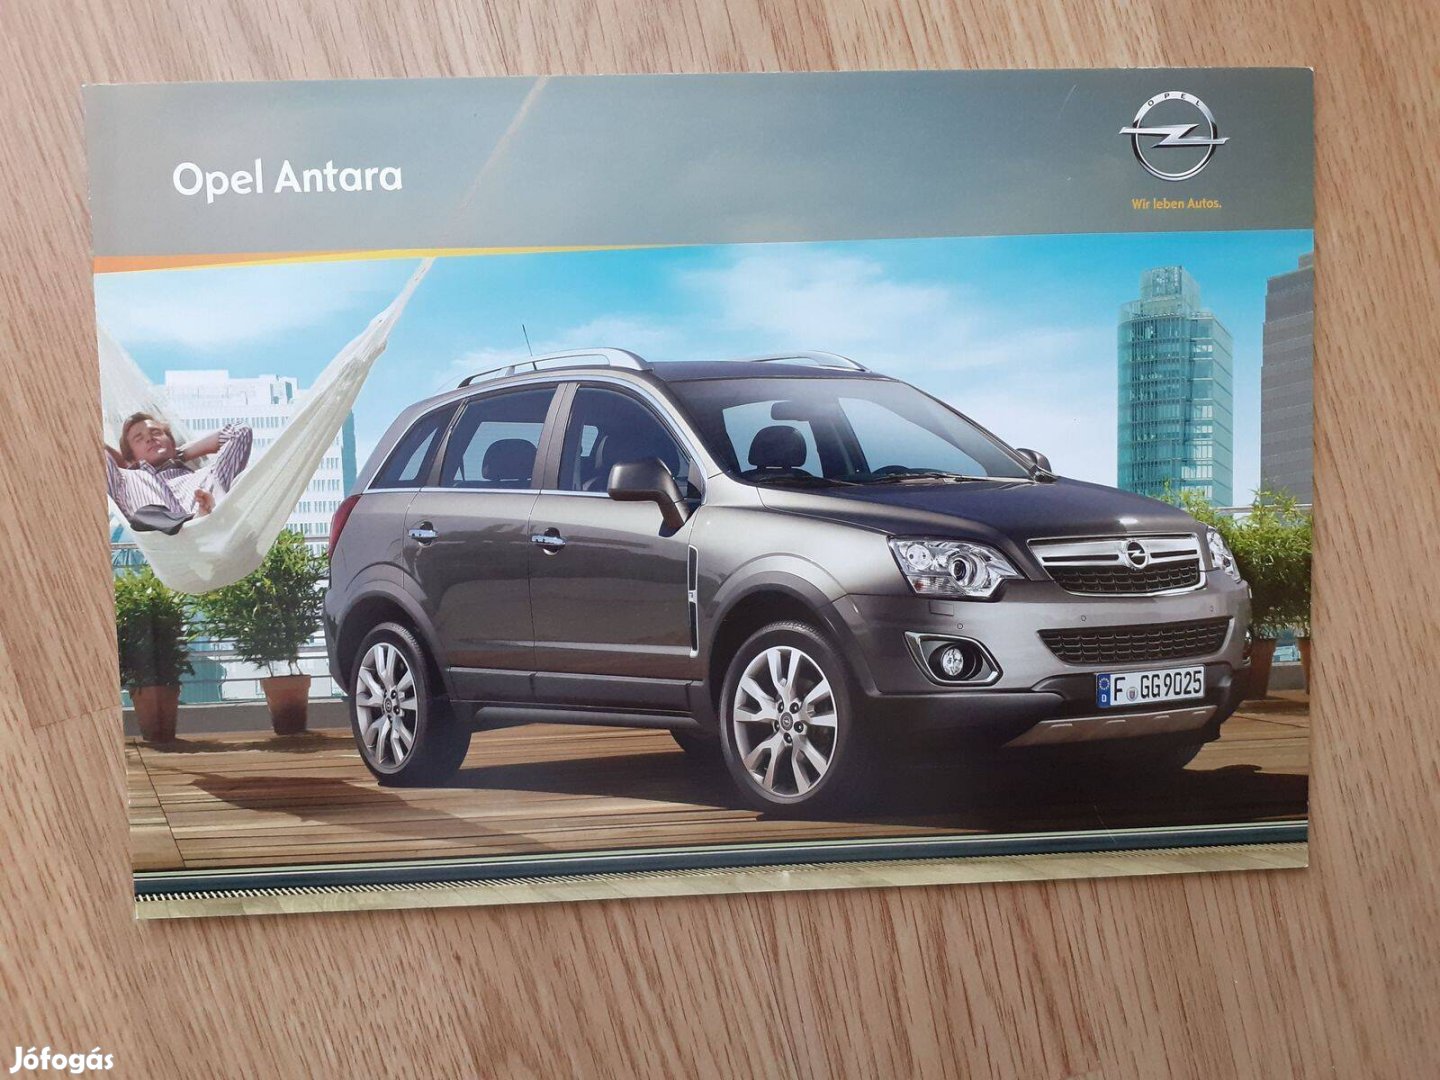 Opel Antara prospektus - 2012, magyar nyelvű